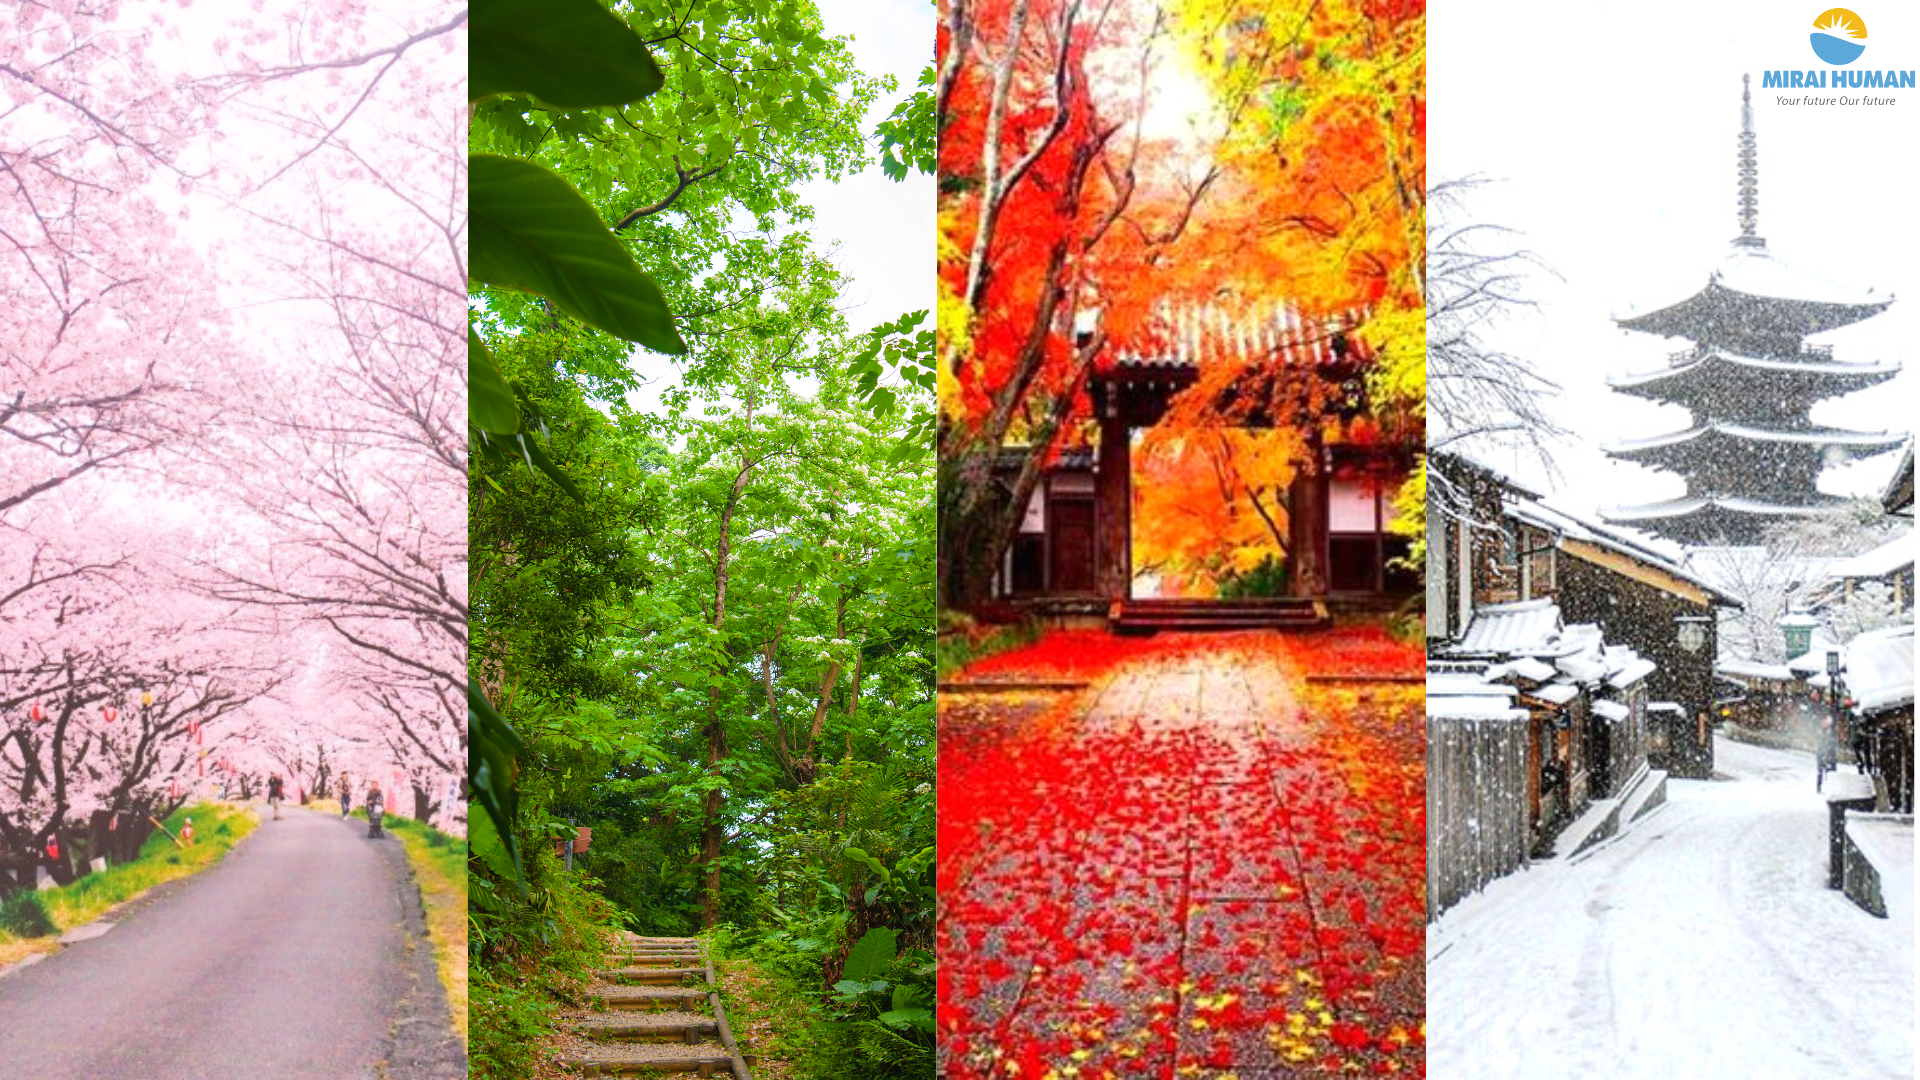 Thời tiết Nhật Bản - Cách chăm sóc sức khoẻ theo mùa